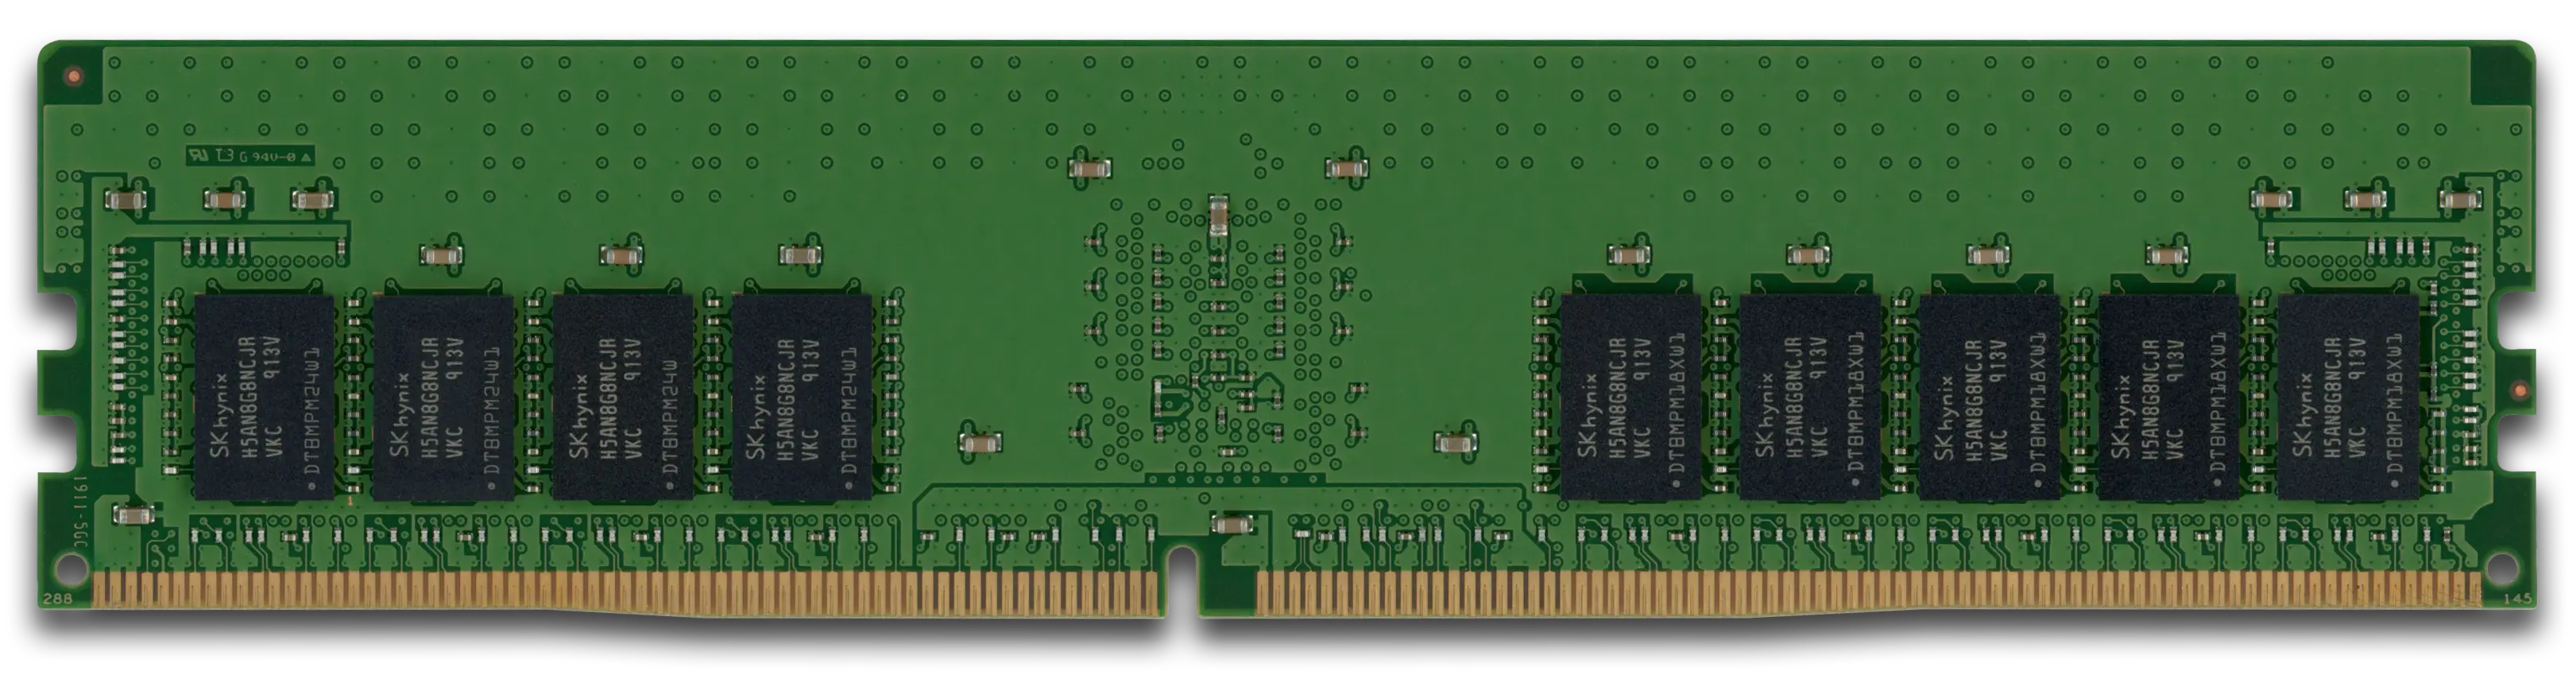 HPE 16GB RAM-Modul DDR4 2666 MT/s PC4-2666V-R RDIMM ECC 835955-B21, refurbished